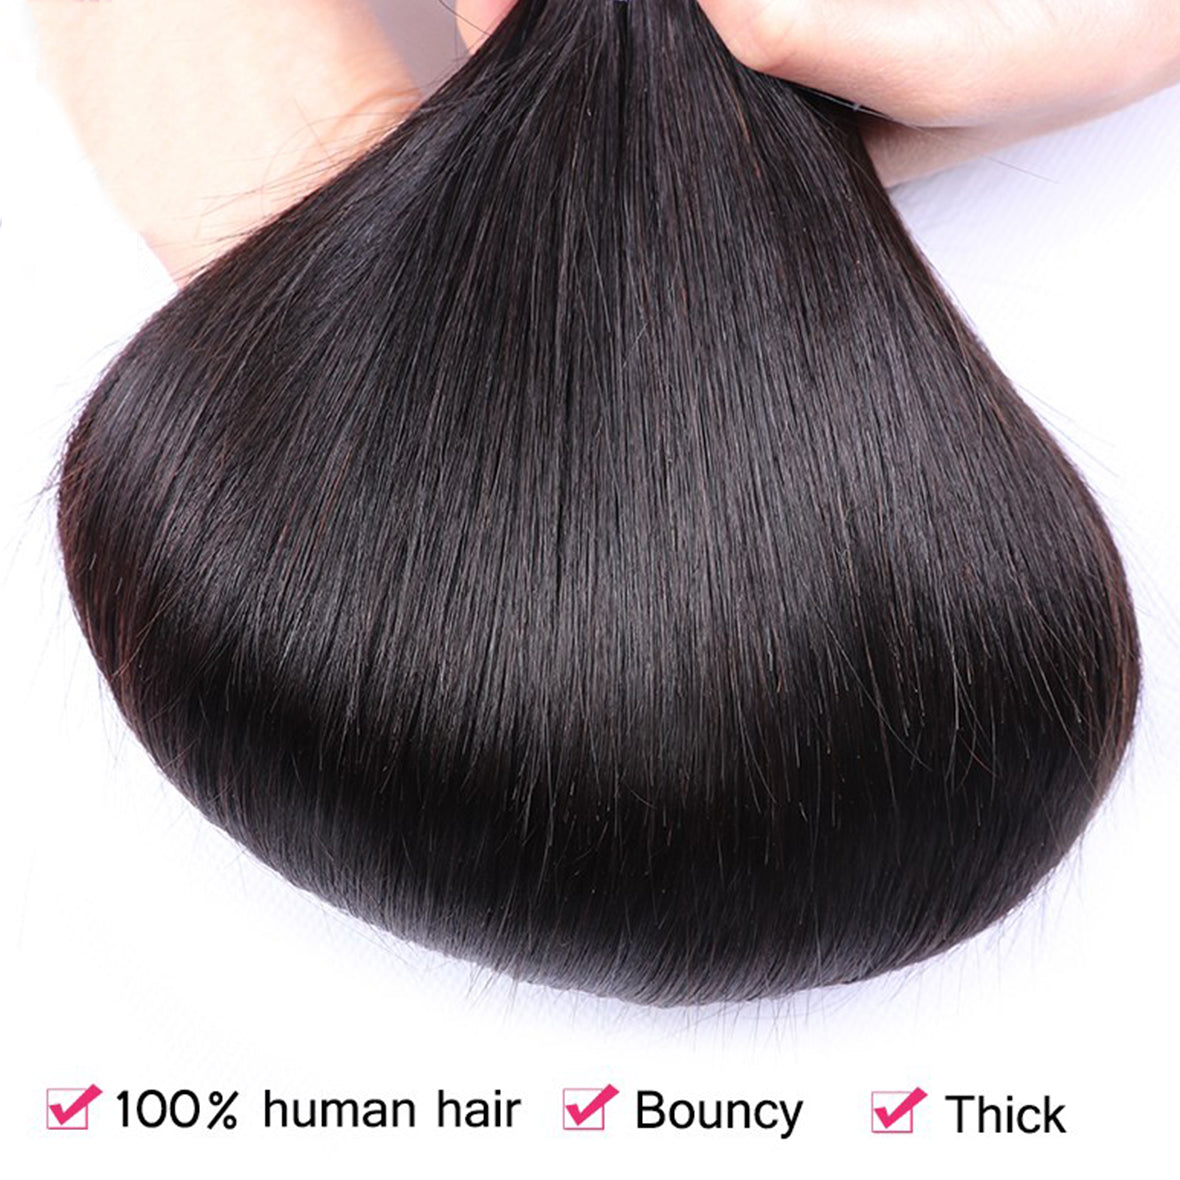 7A Malaysian Virgin Hair Straight Hair Bundles With Closure 100% Human Hair 3 Bundles With Lace Closure Hair Extensions